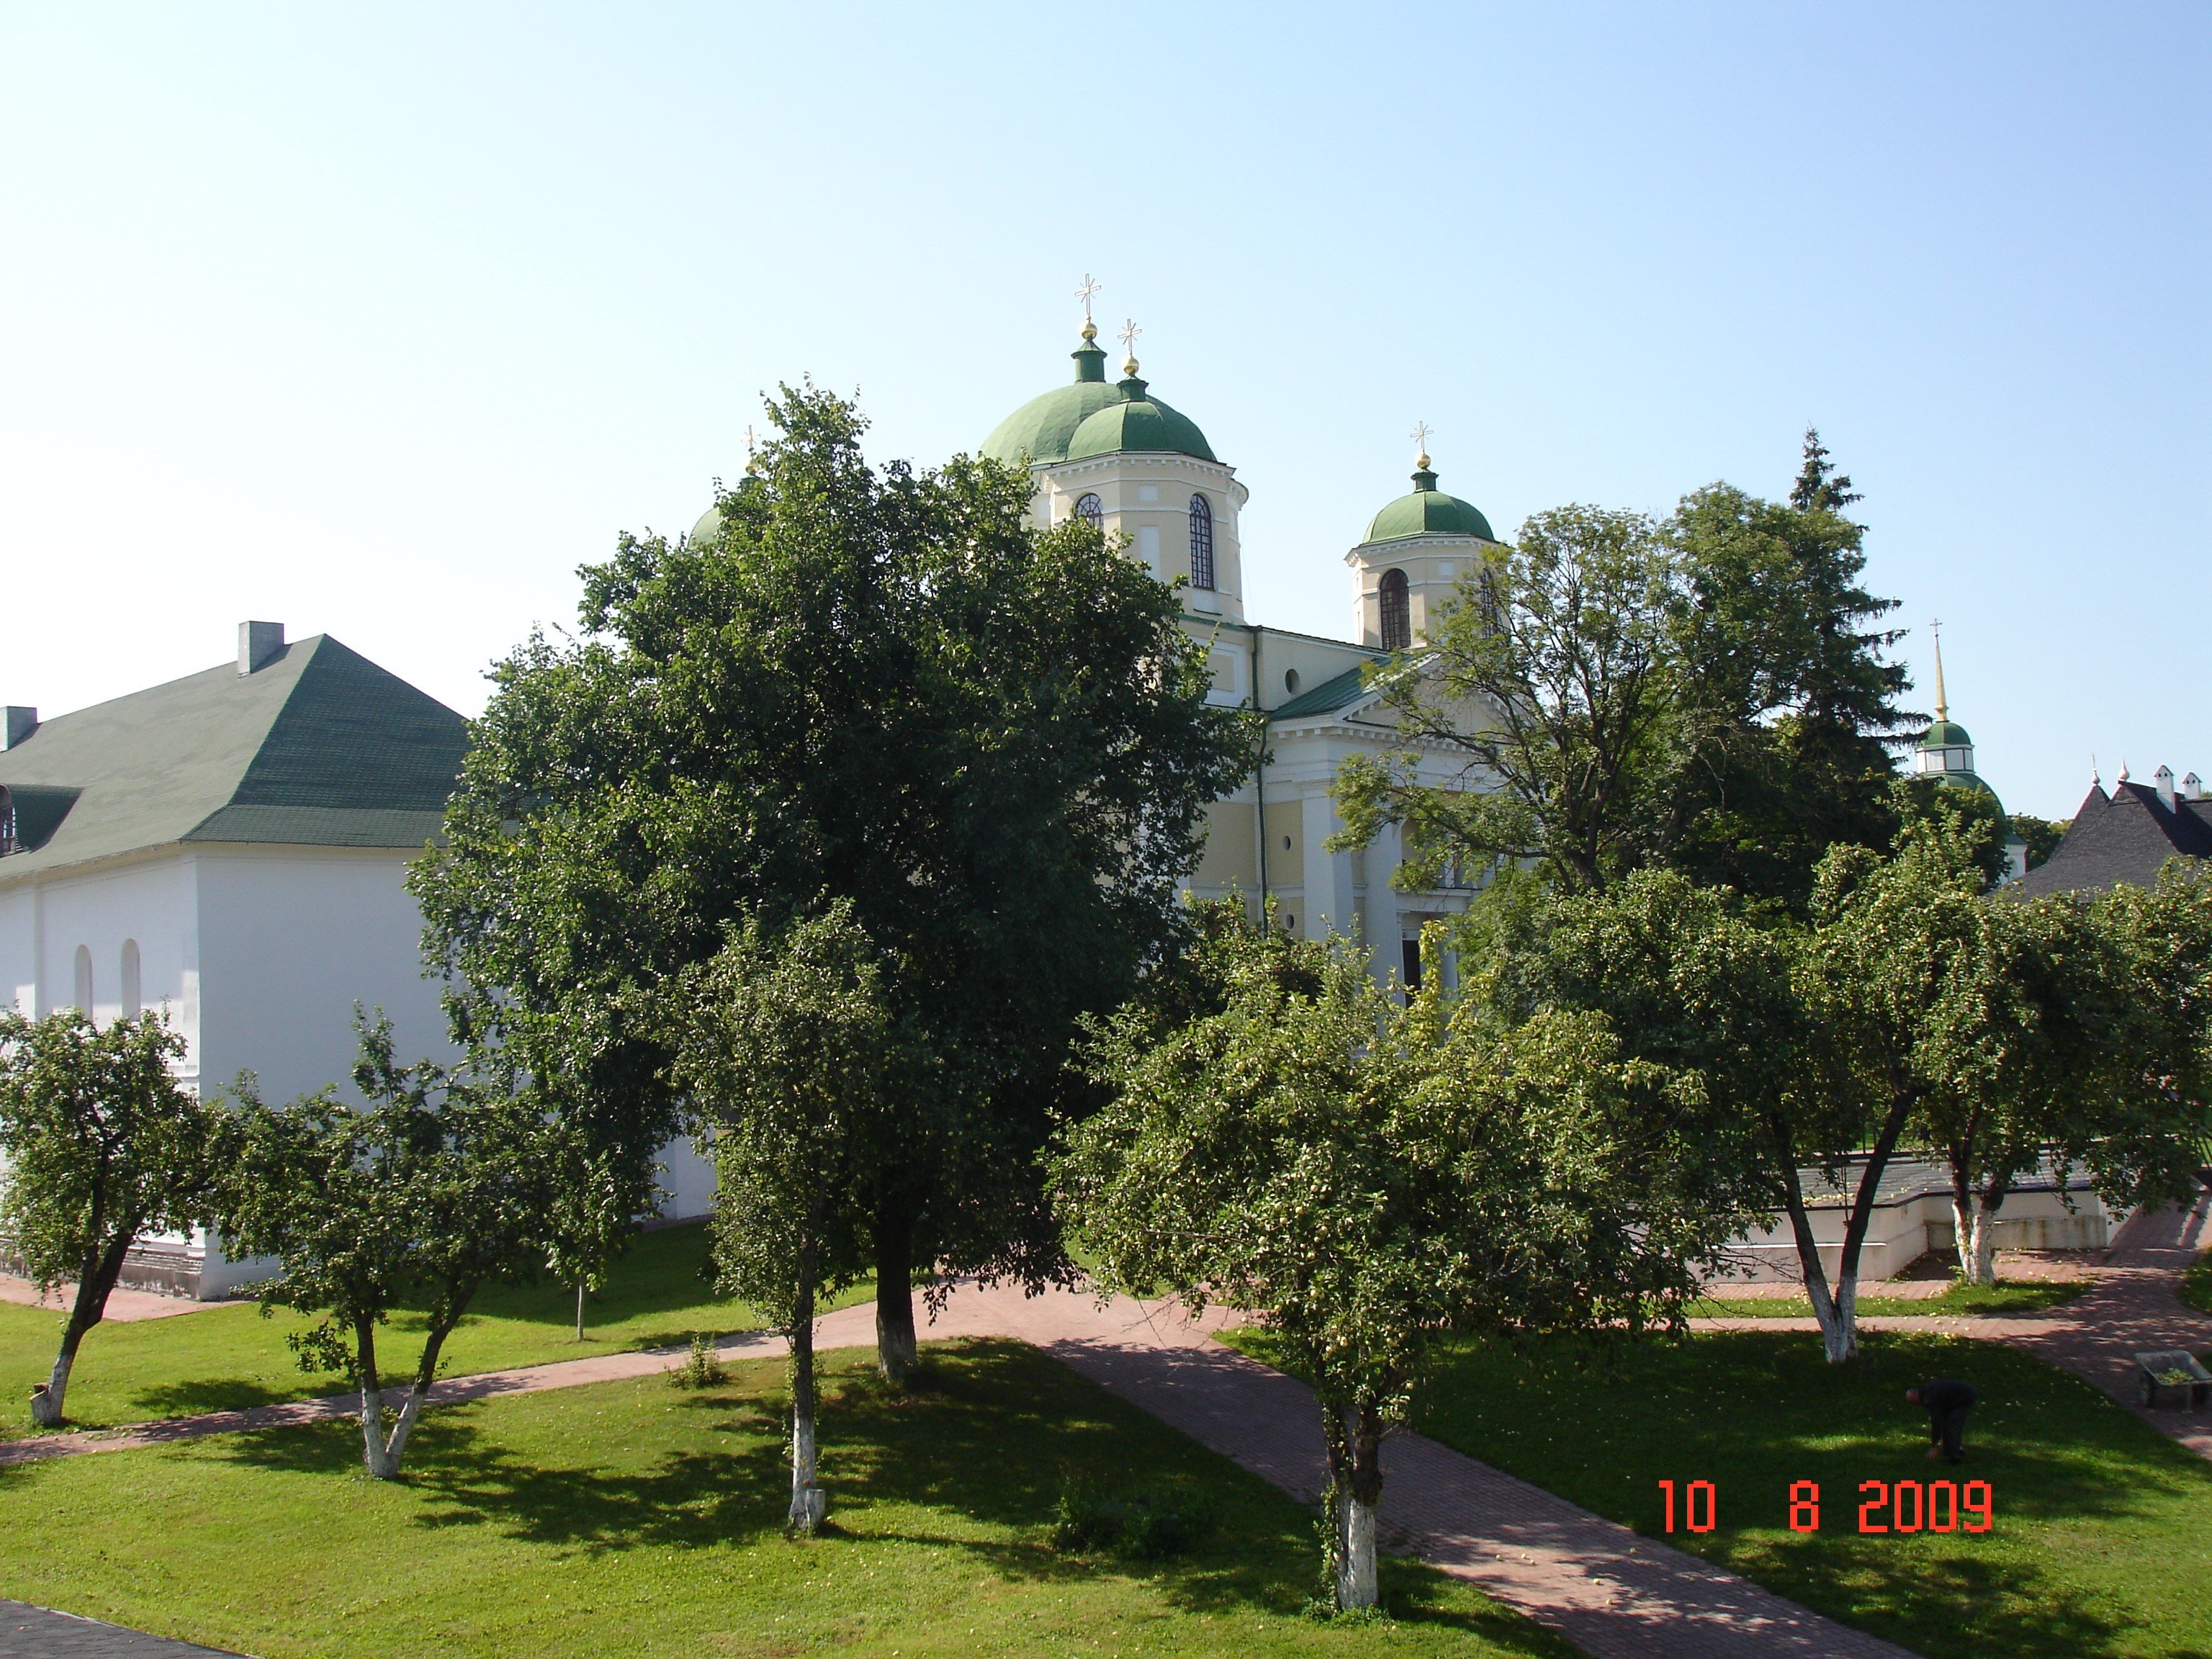 Так виглядає влітку старовинний Новгород-Сіверський Спасо-Преображенський монастир. Фото — Тетяна Чернецька (2009).